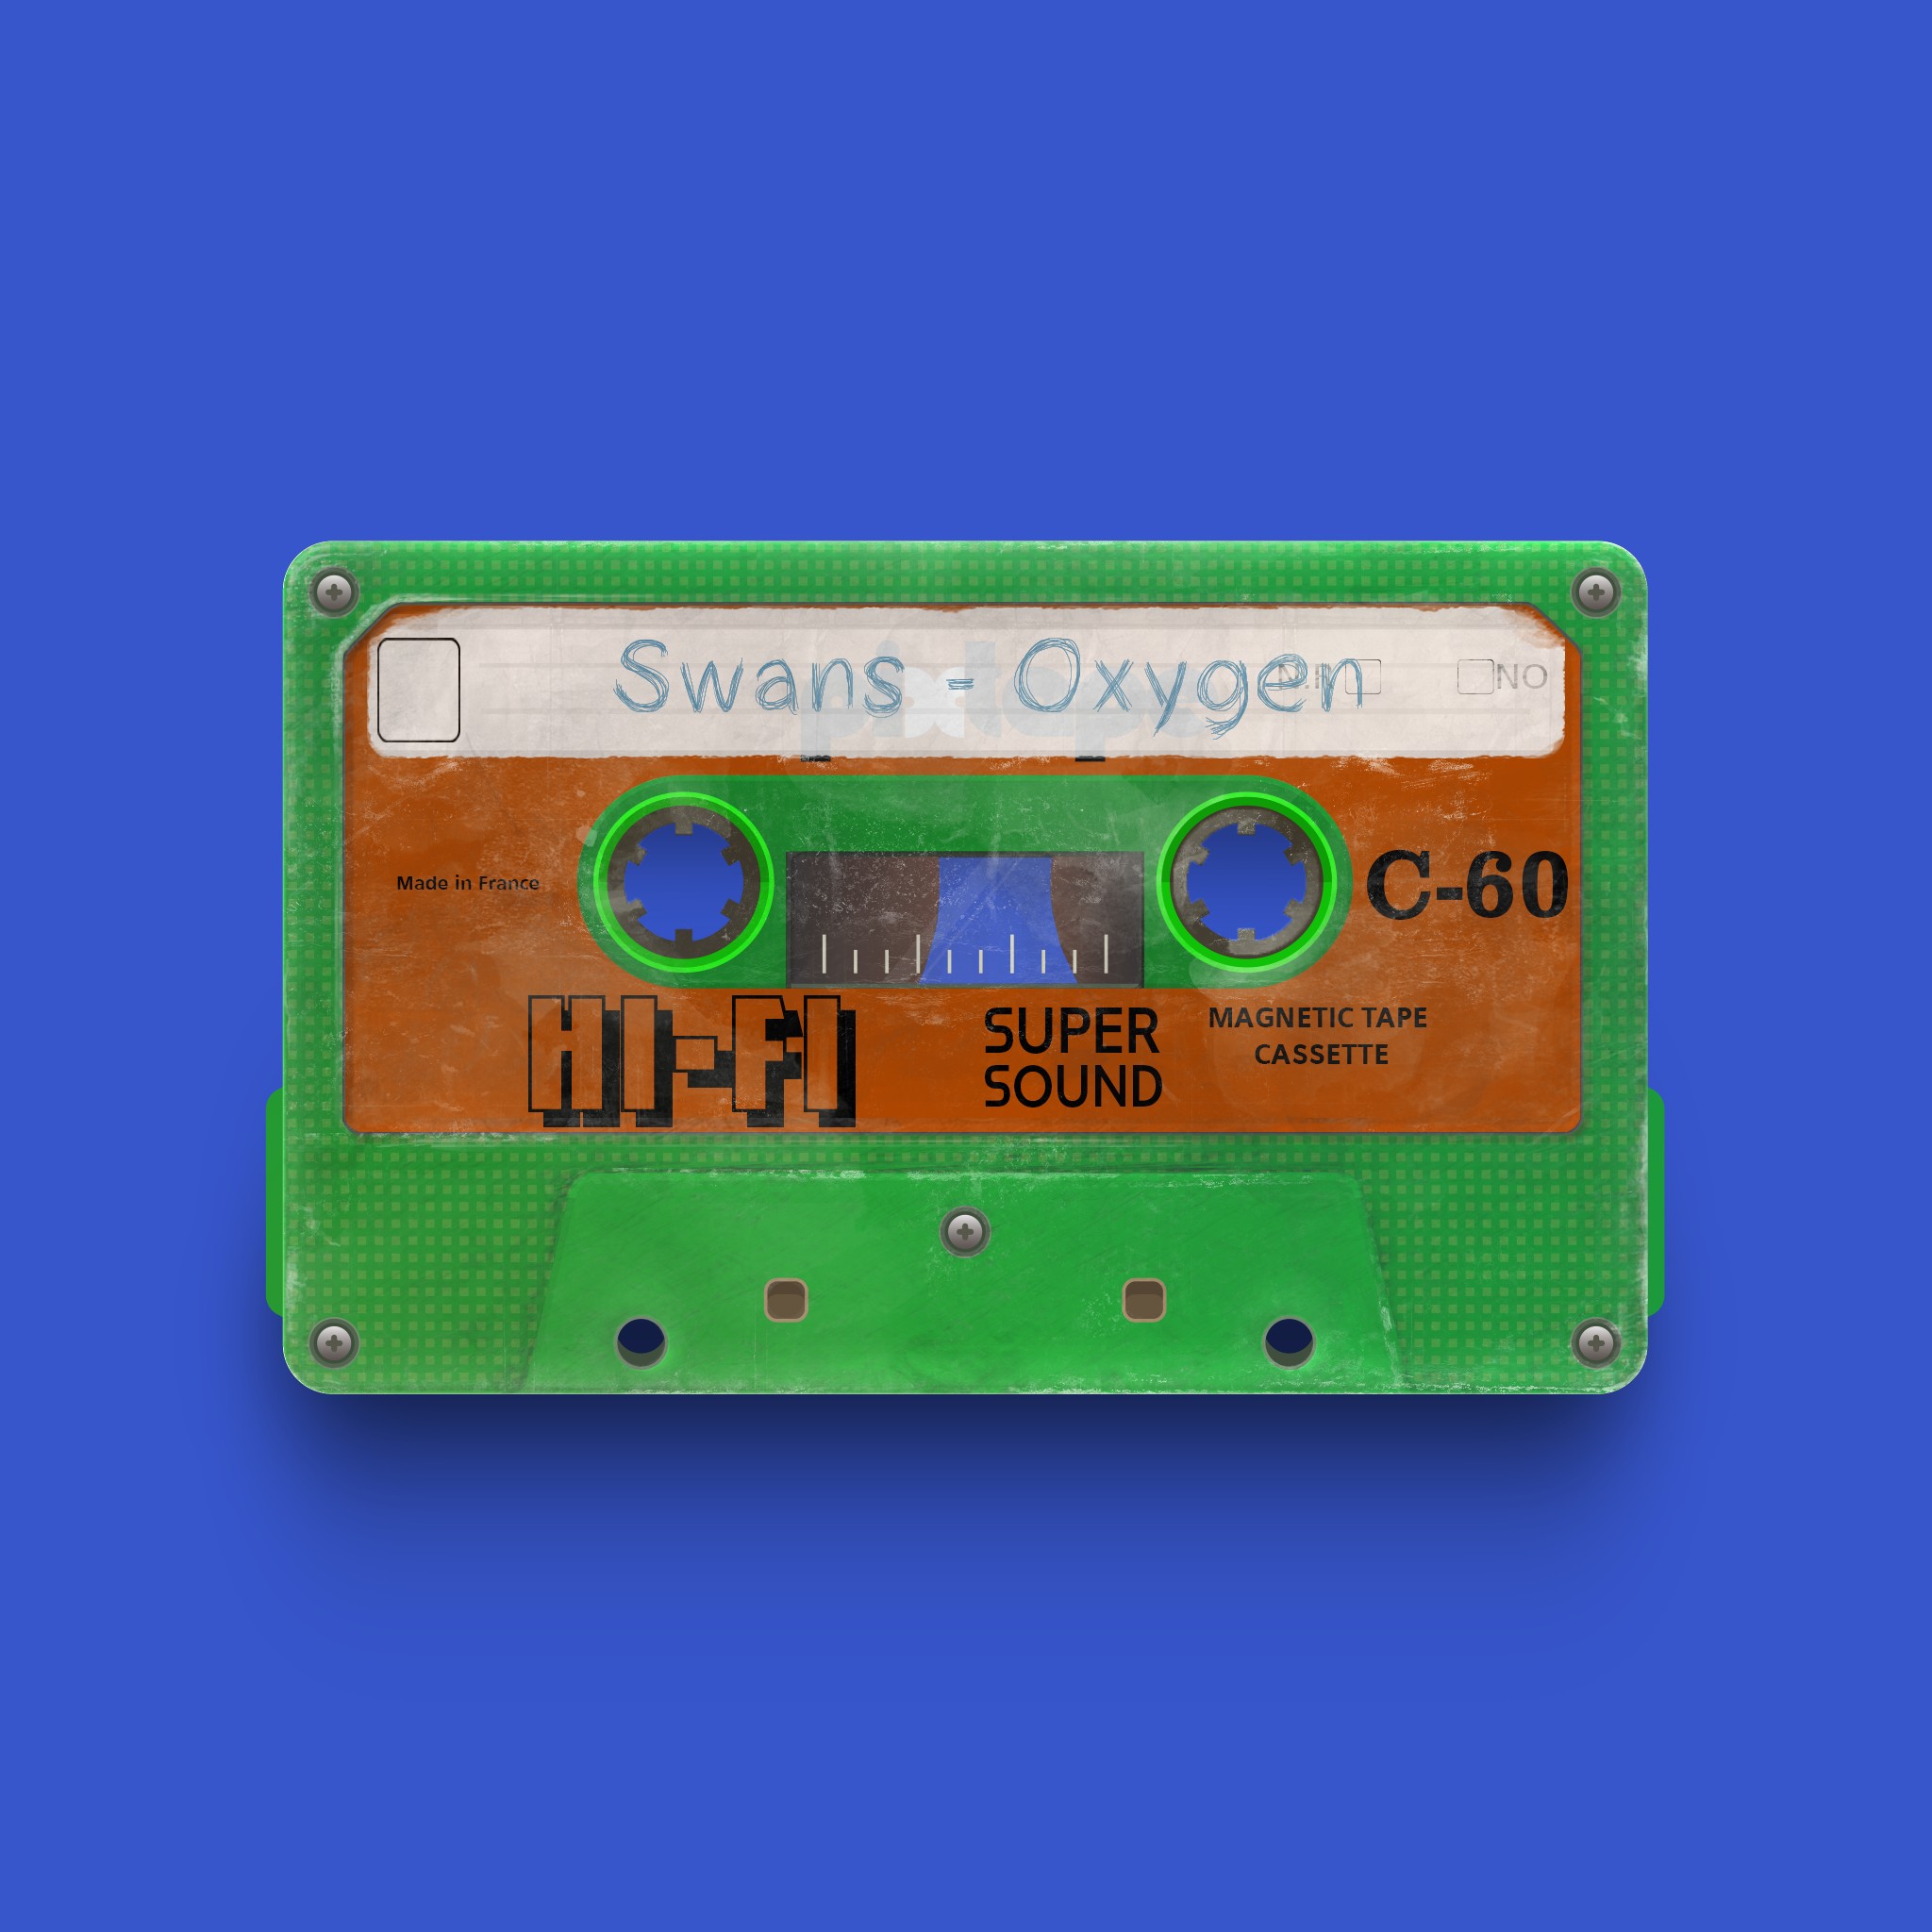 PixTape #9965 | Swans - Oxygen